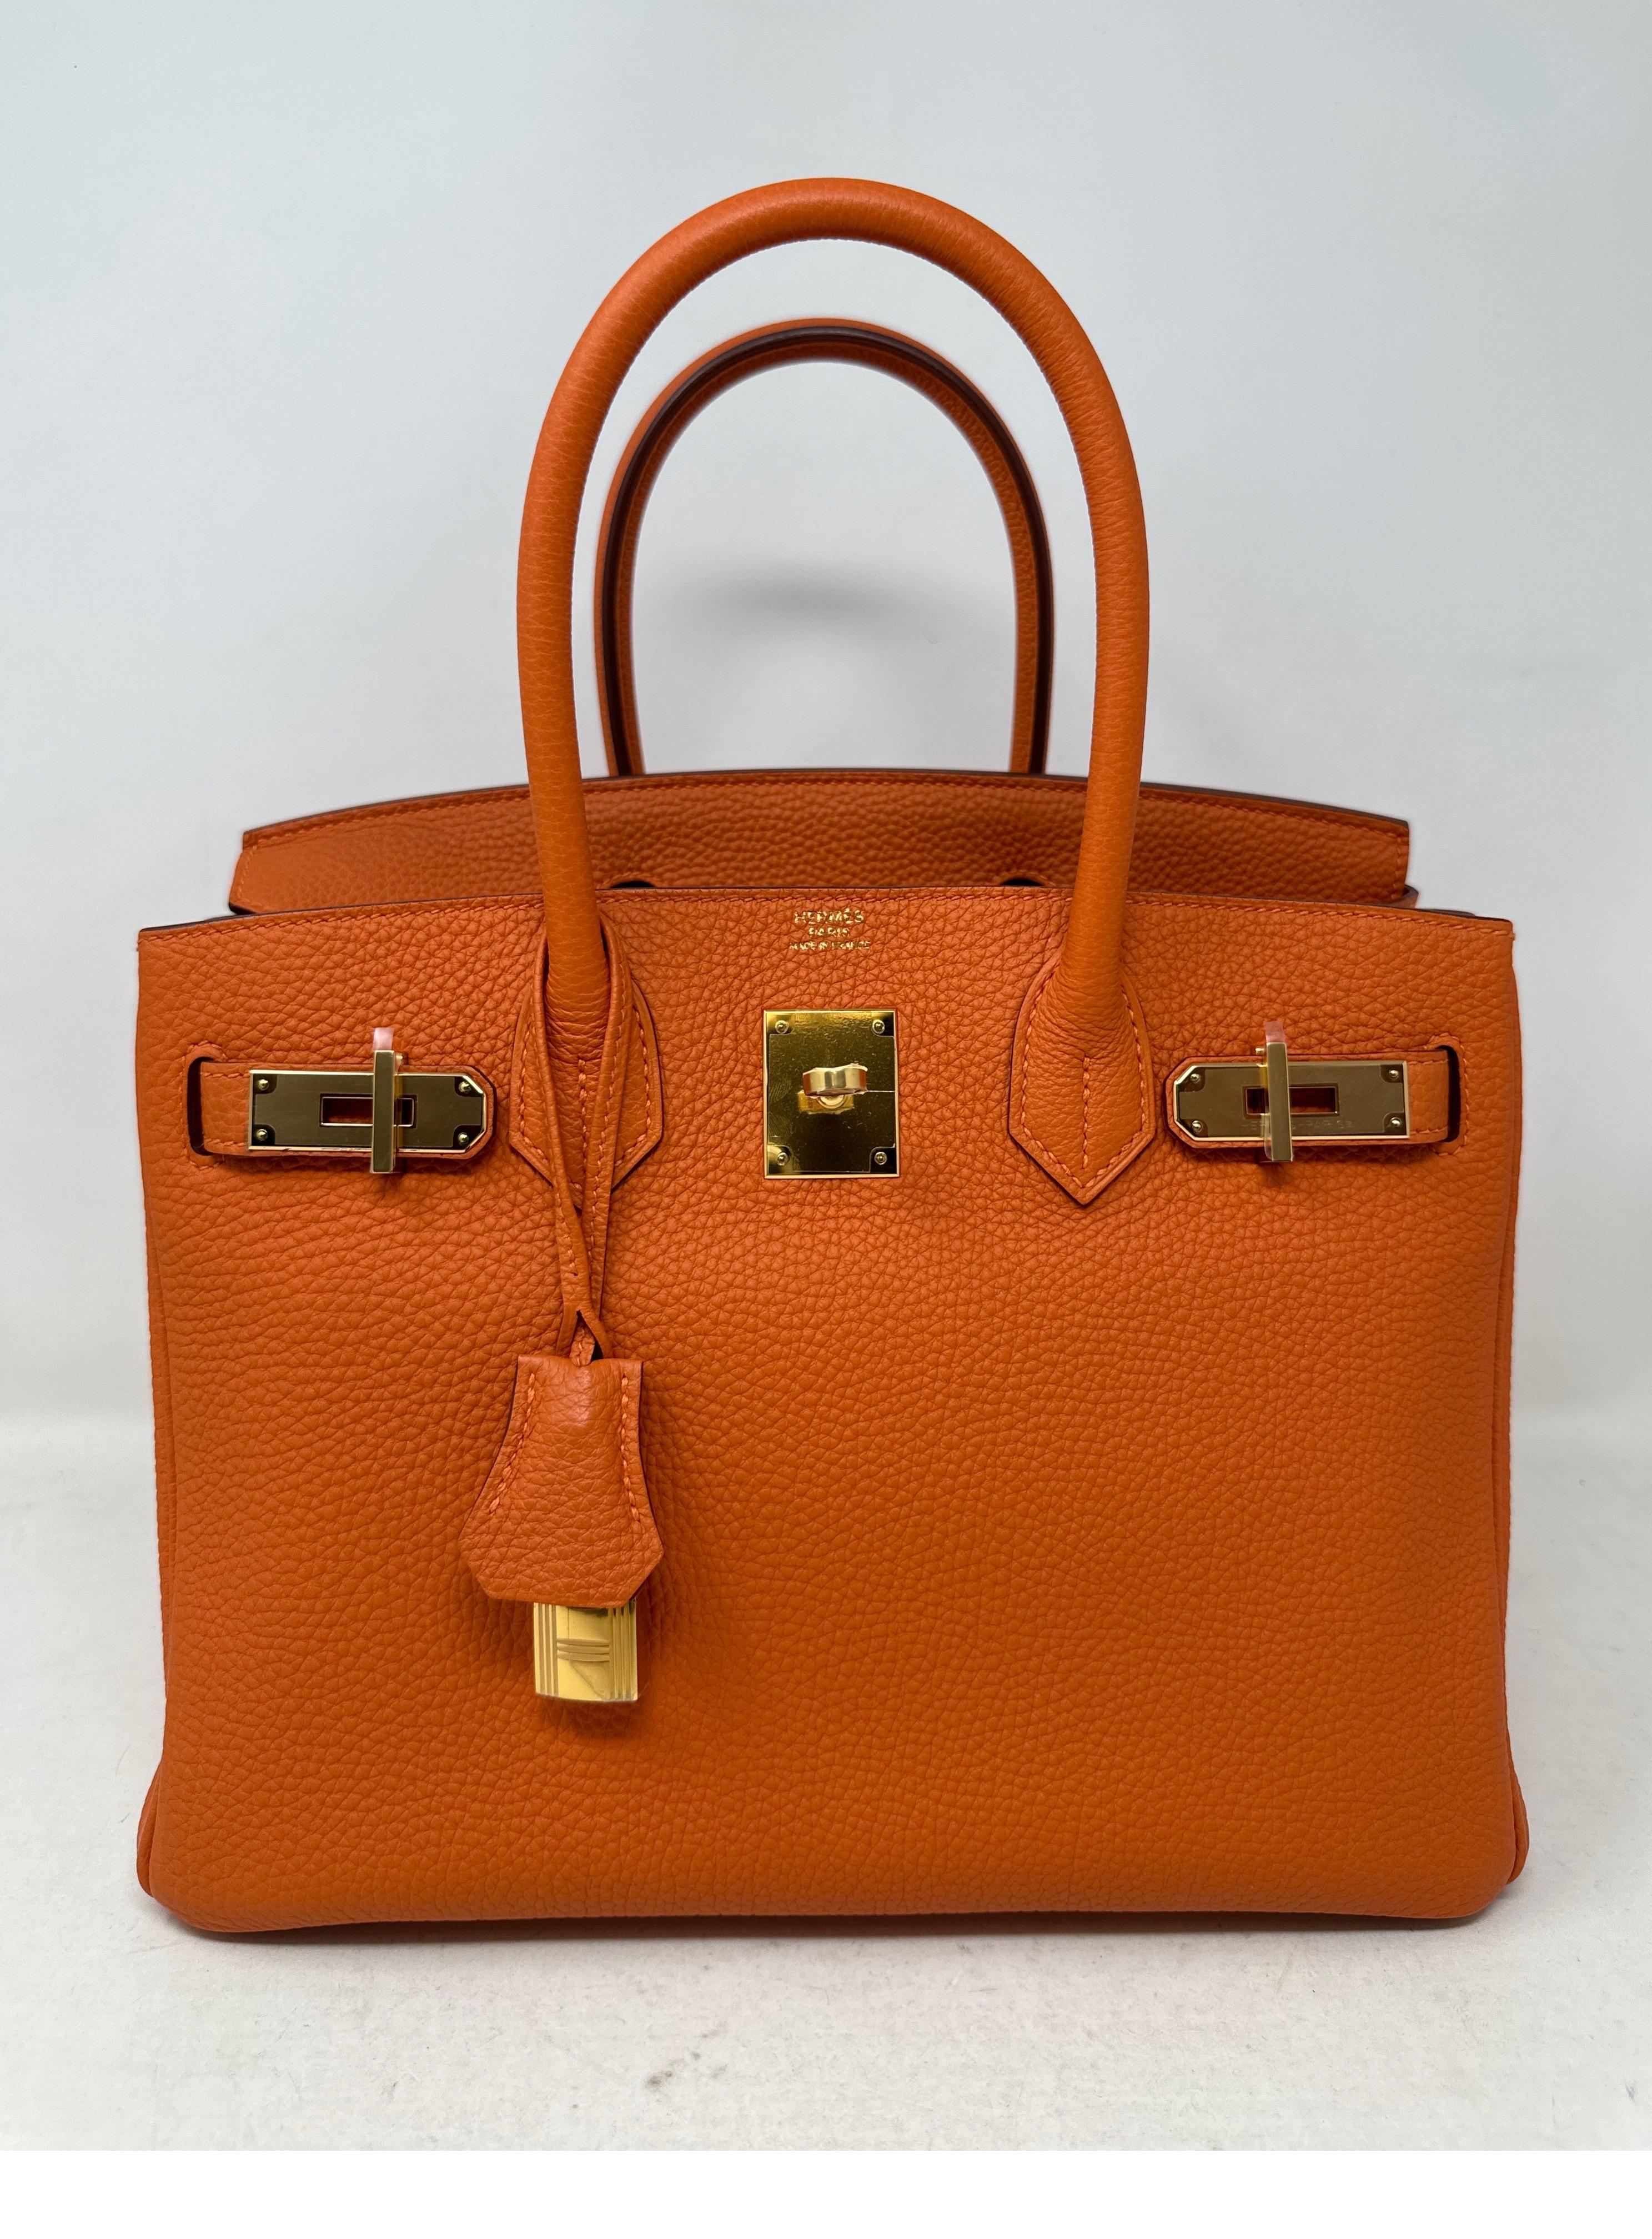 Sac Hermes Birkin 30 orange. La couleur orange la plus classique d'Hermès. Ce sac semble n'avoir jamais été utilisé. Excellent état. Matériel doré. Cuir Togo. Une combinaison étonnante. Cadeau idéal pour un Hermes  collecteur. Comprend une